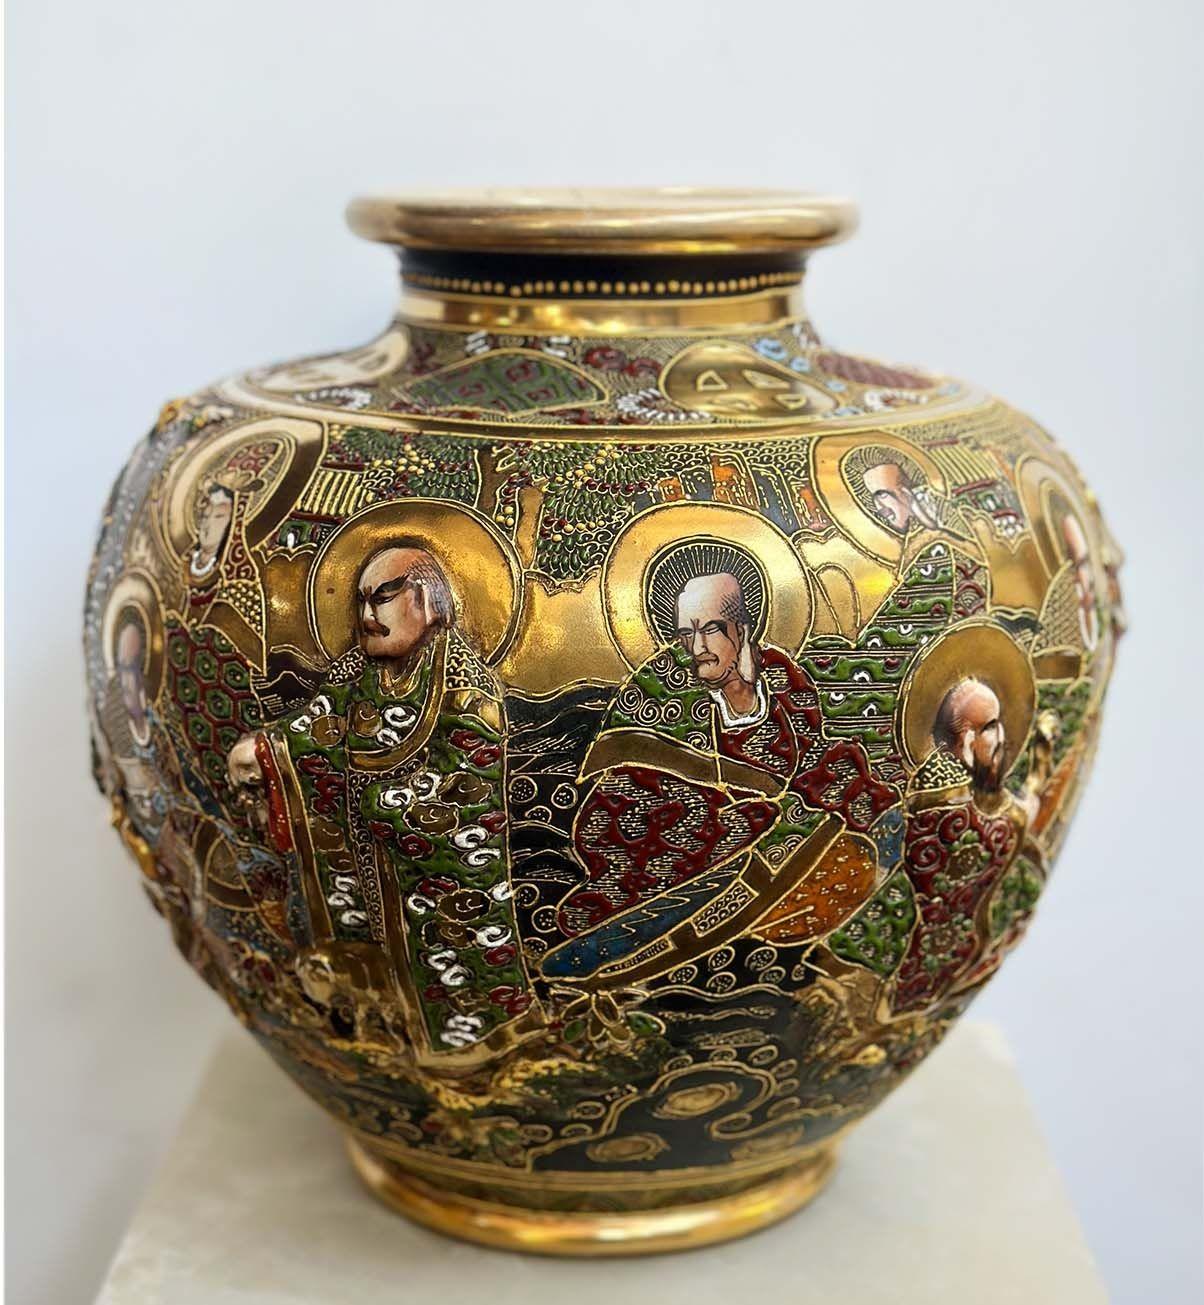 Antike Satsuma Vase aus vergoldetem Porzellan mit handgemalten unsterblichen Figuren rund um das Stück in Hochrelief. Hergestellt in Japan, um 1900.
*Inklusive Markierung auf dem Sockel.
Abmessungen:
11,5 